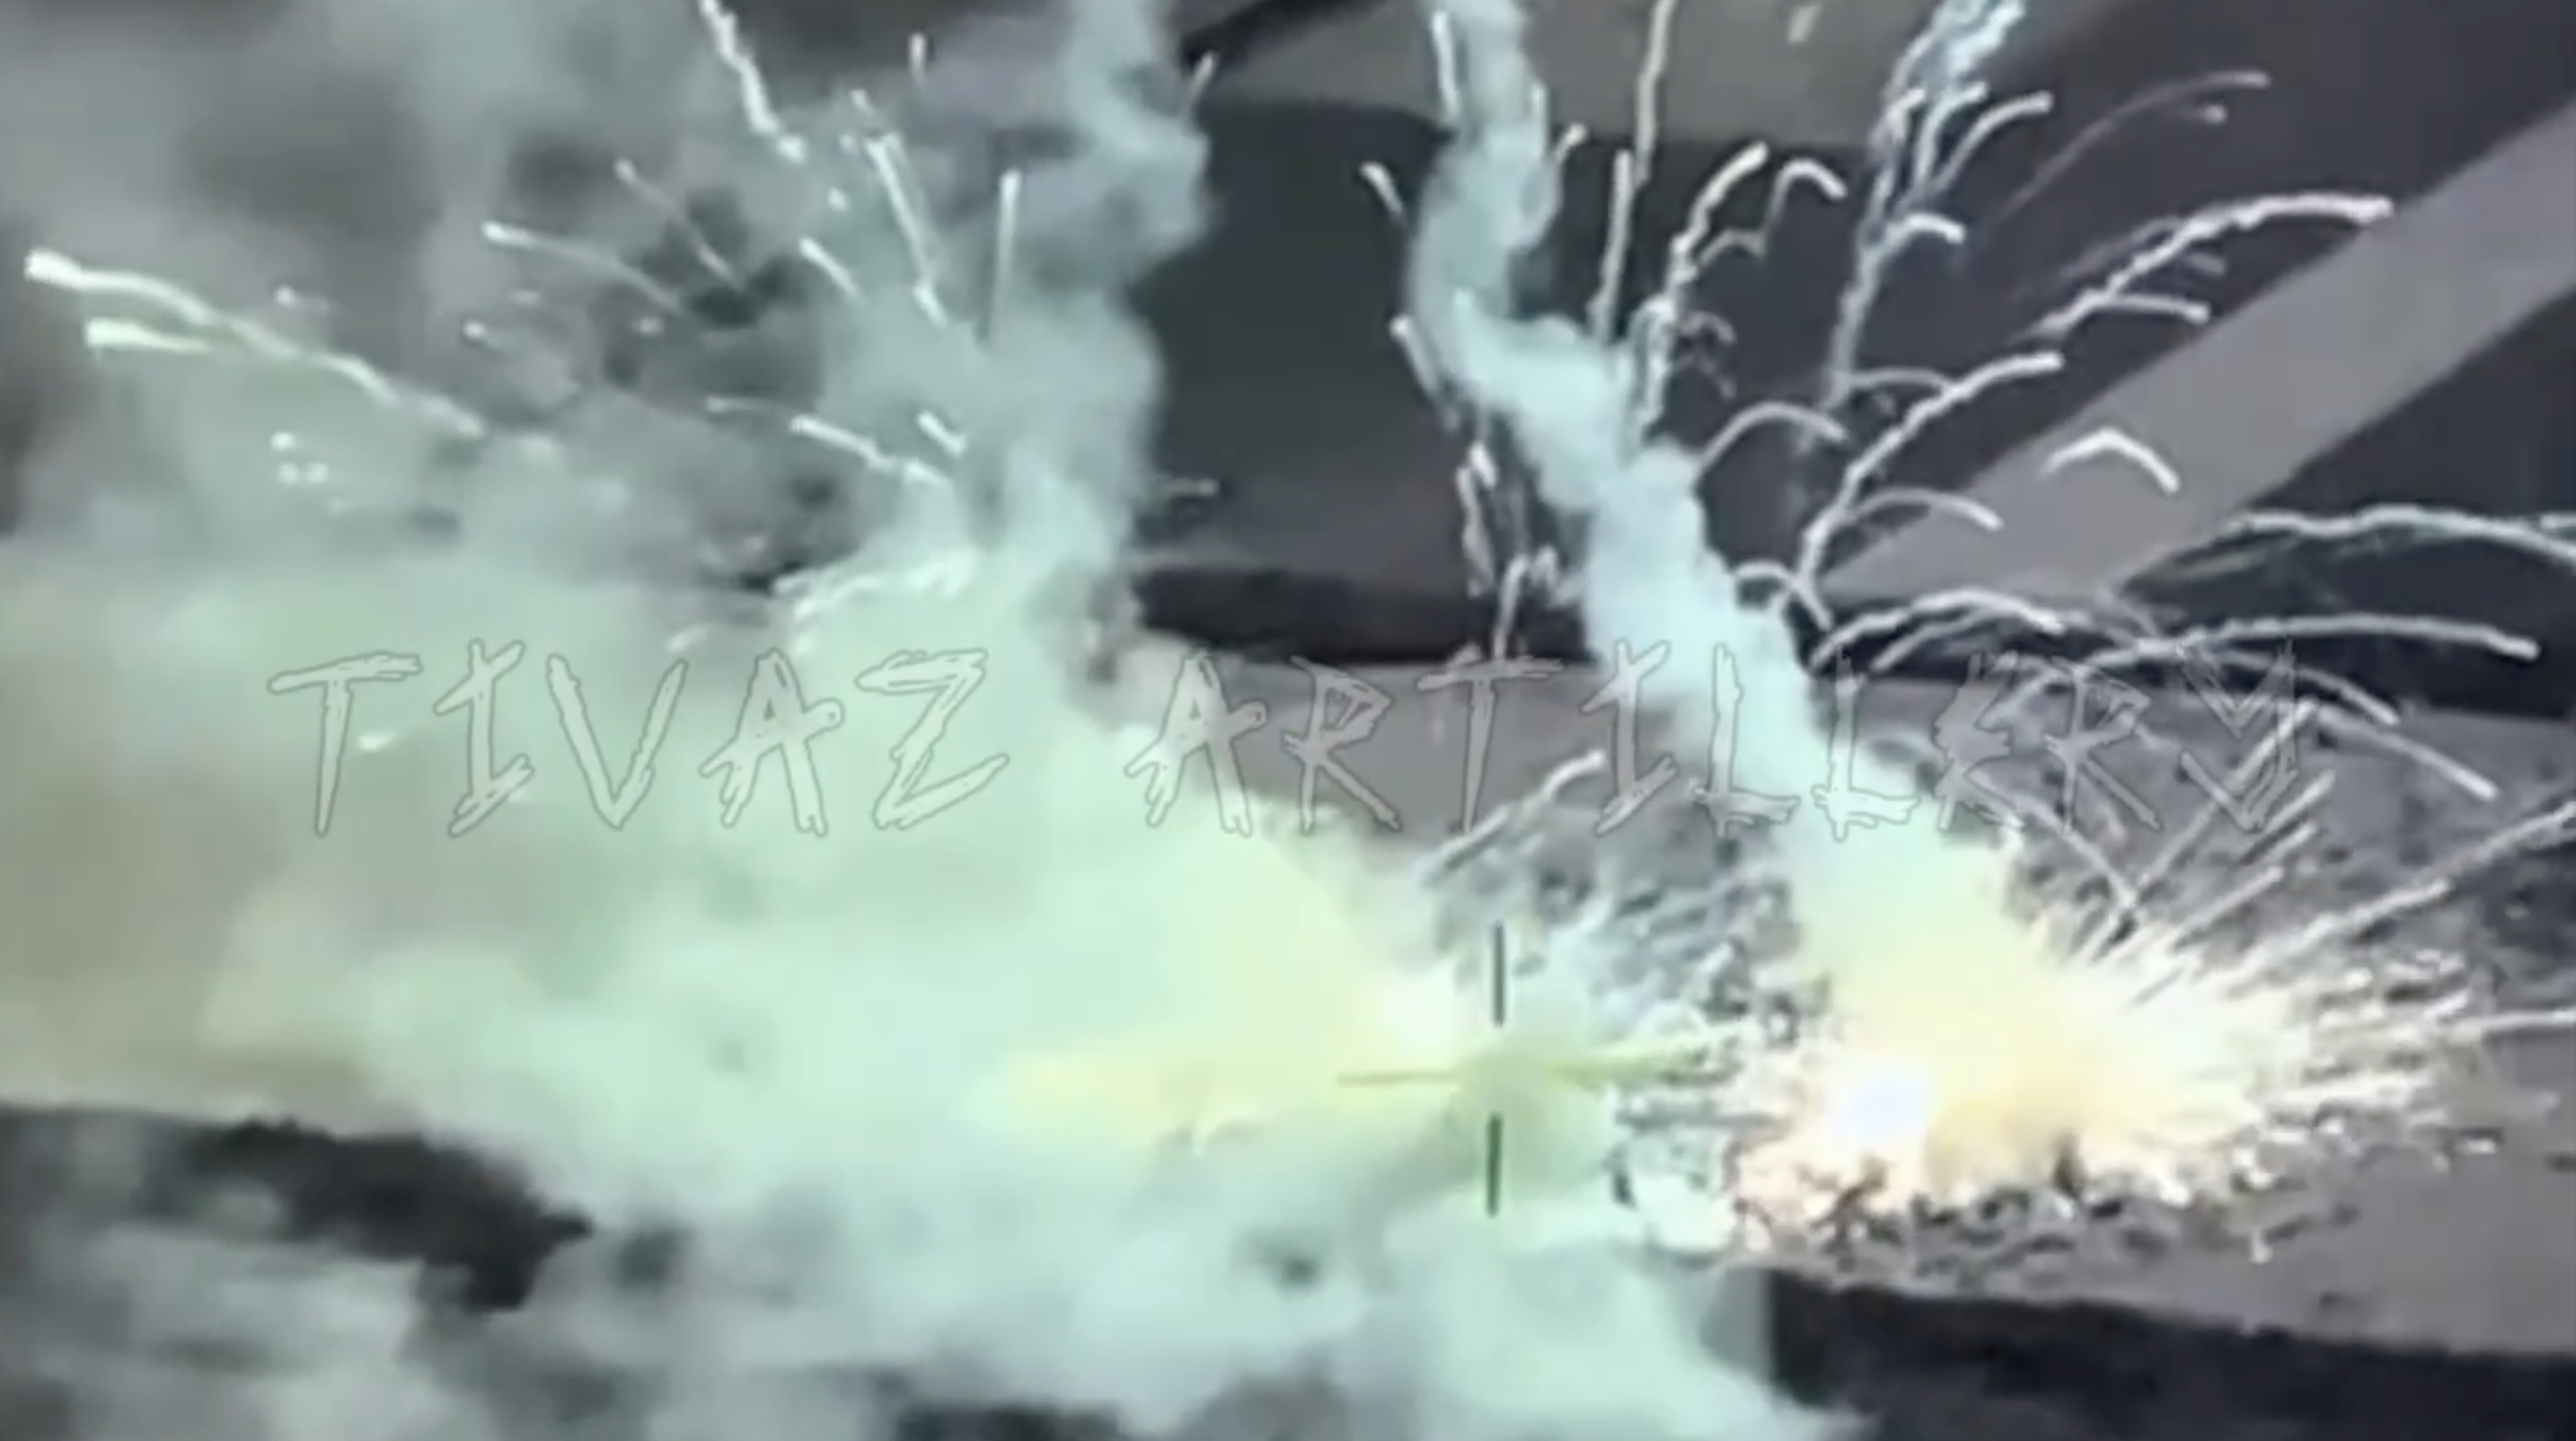 Das kann man sich ewig anschauen: Die AFU zeigte, wie sie eine Batterie russischer S-400 SAMs mit ATACMS-Raketen zerstörte (Video)